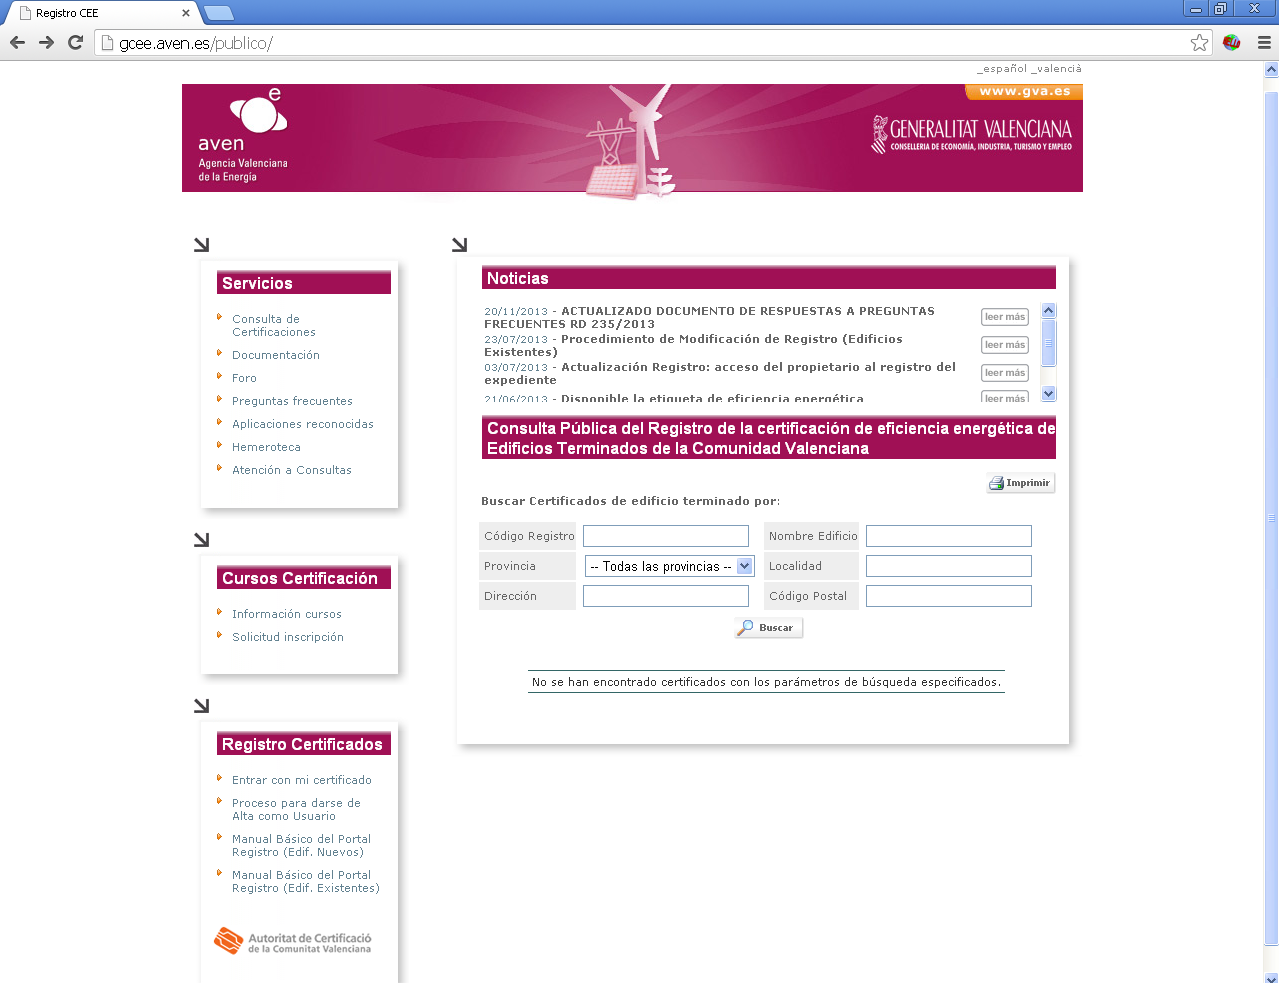 2. ACCESO AL PORTAL WEB Portal Web de Registro de Certificación Energética de la Comunidad Valenciana: http://gcee.aven.